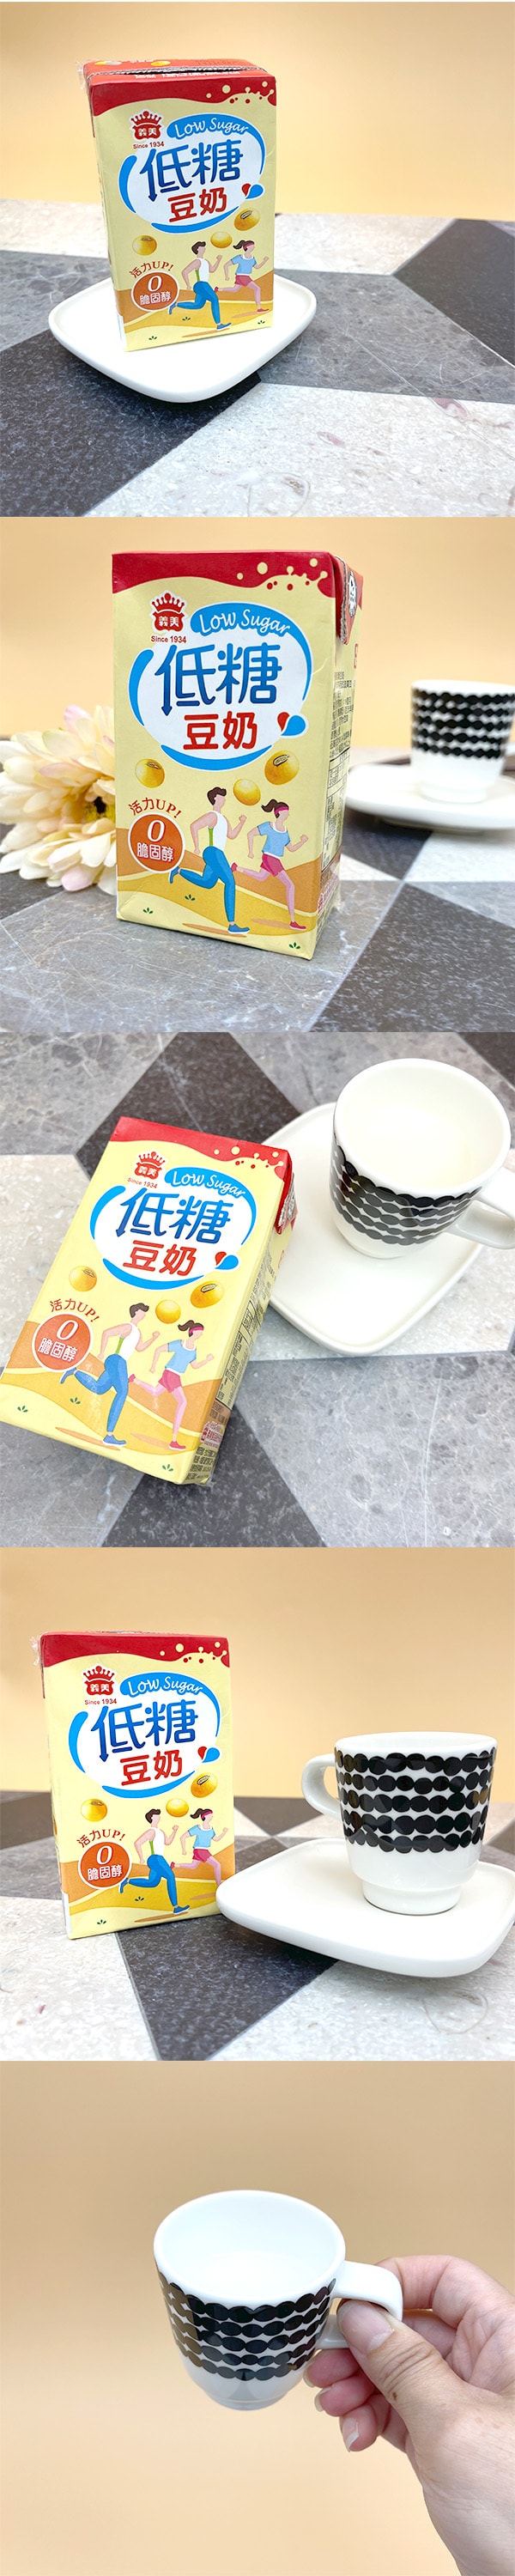 [台湾直邮]义美 低糖豆奶 250ml(限购3罐)